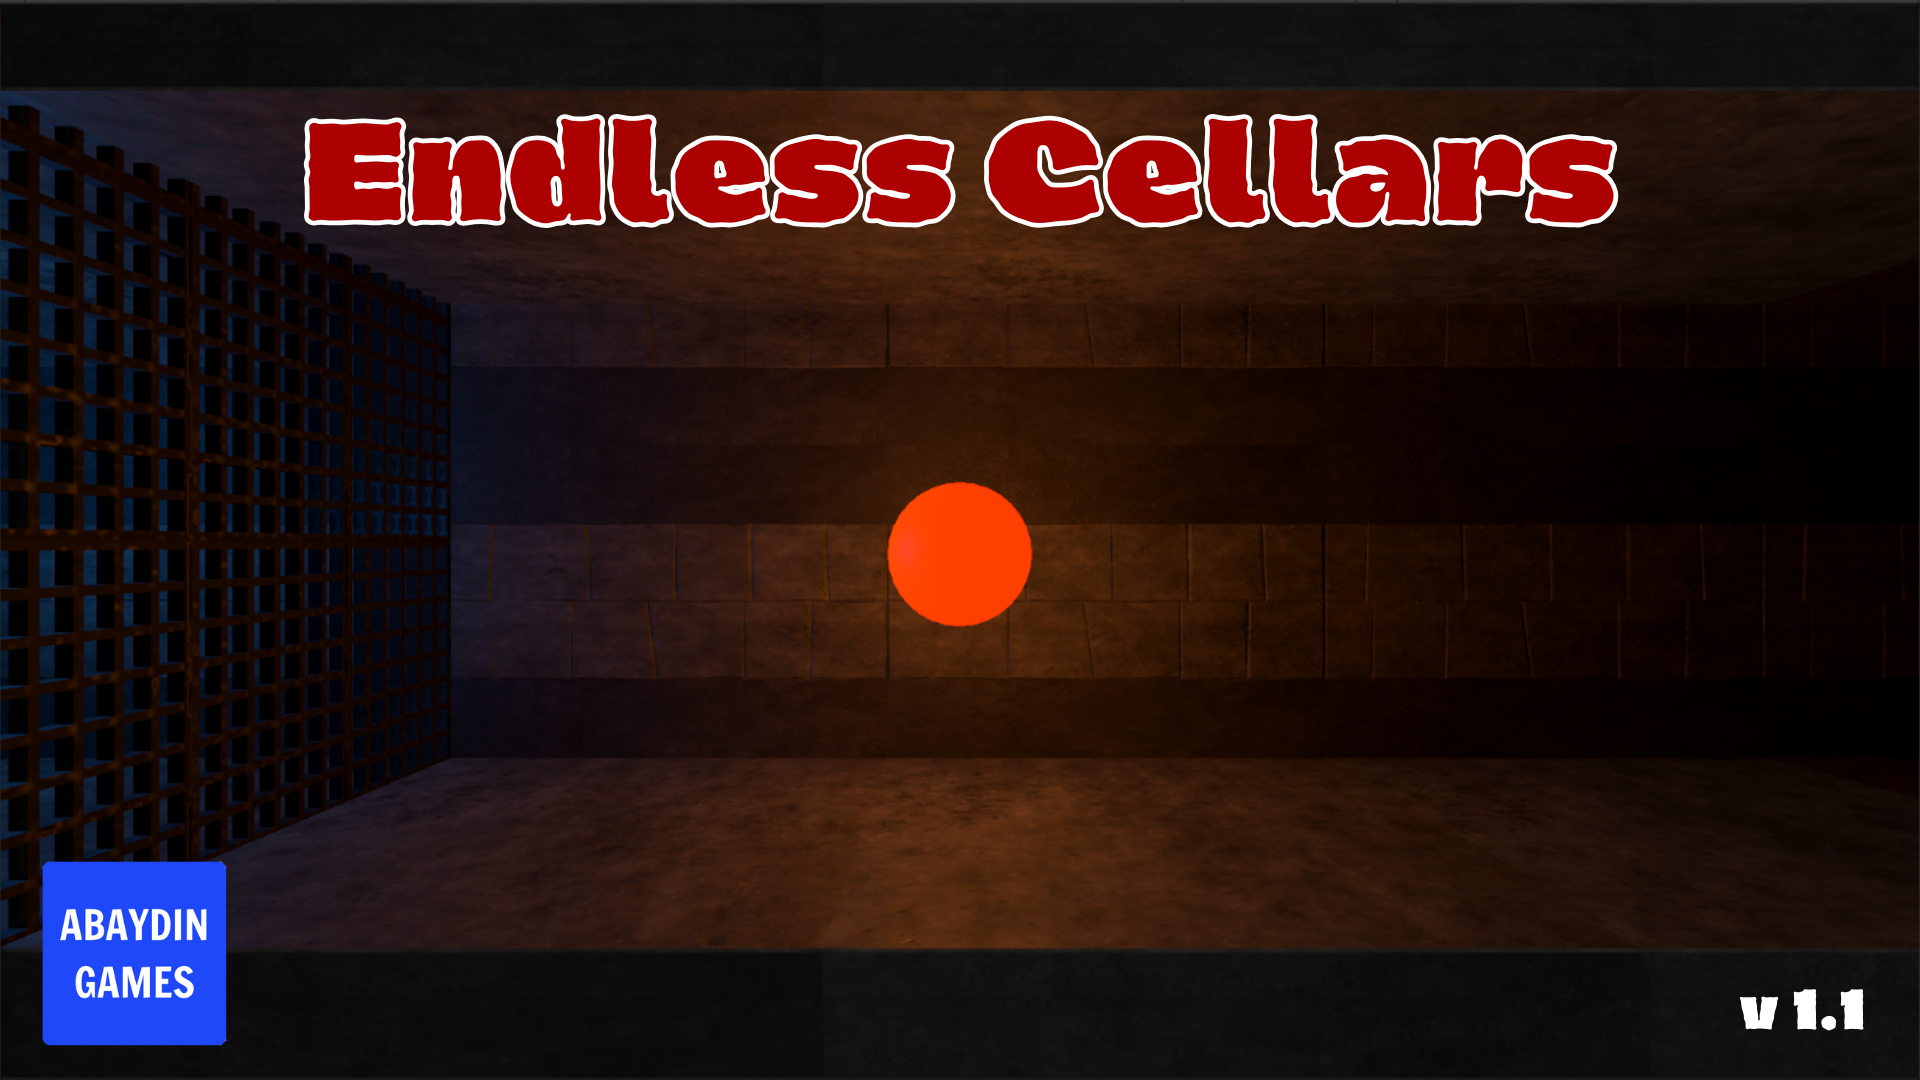 Endless Cellars